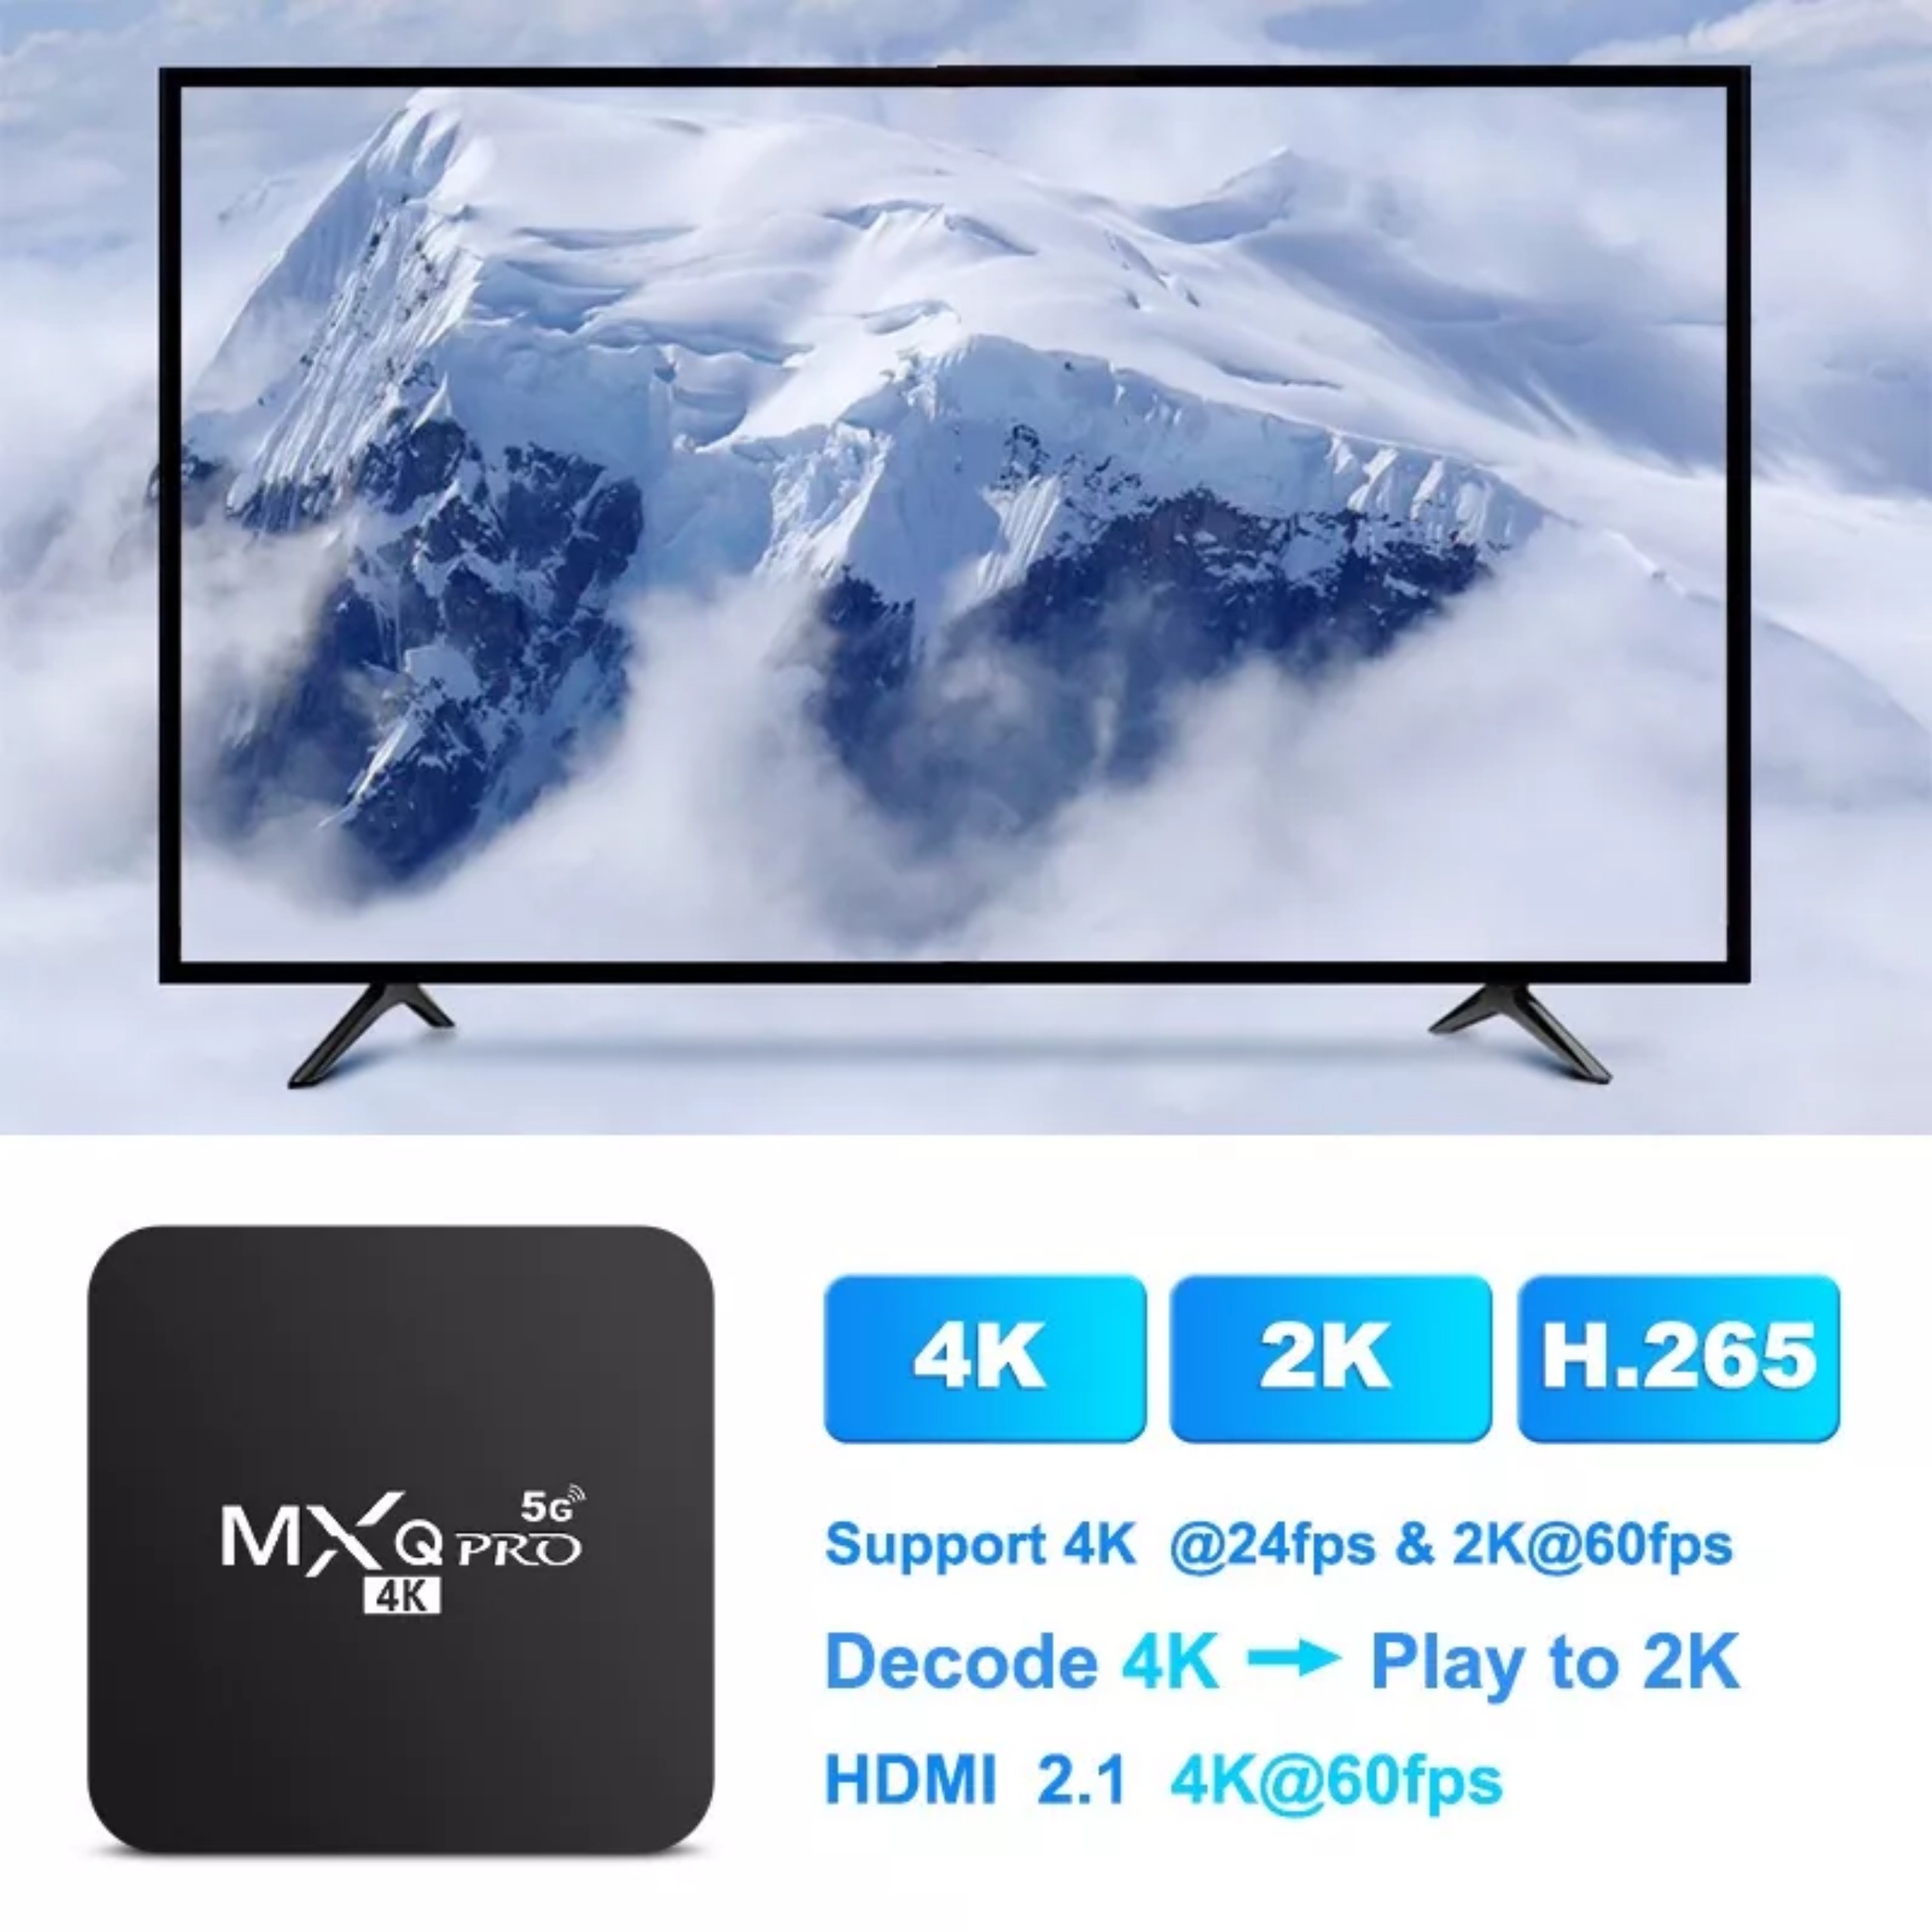 Box MXQ 4K Pro 5G Android 11.1 bản 8GB/128GB xem 108 kênh truyền hình miễn phí, Youtube, Kodi